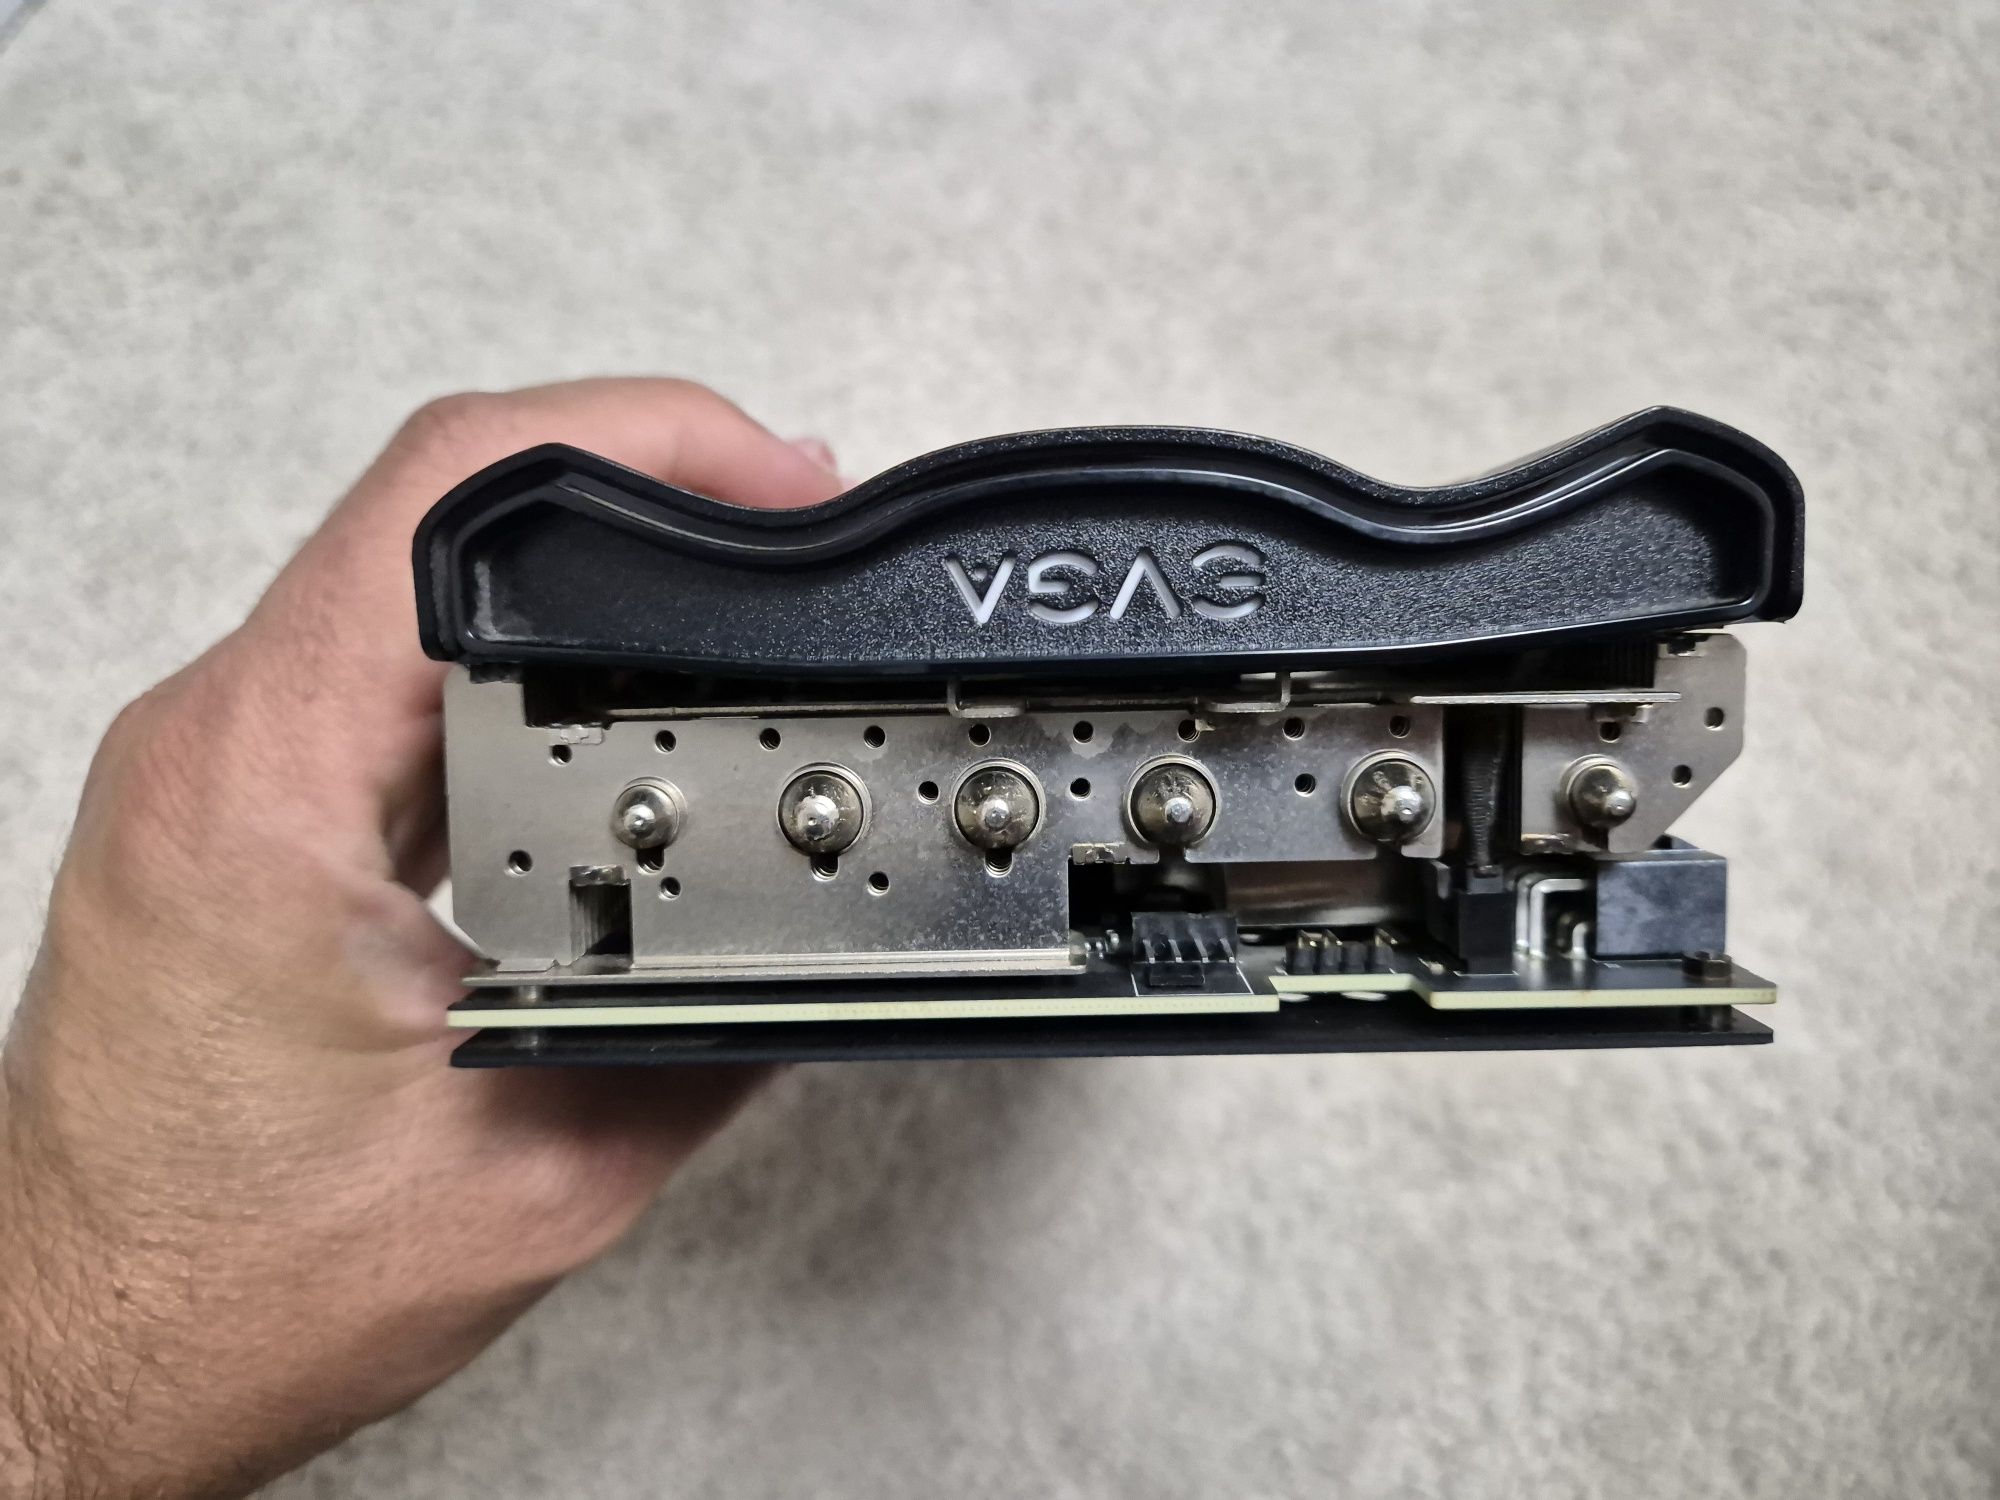 Nvidia RTX 3080 EVGA